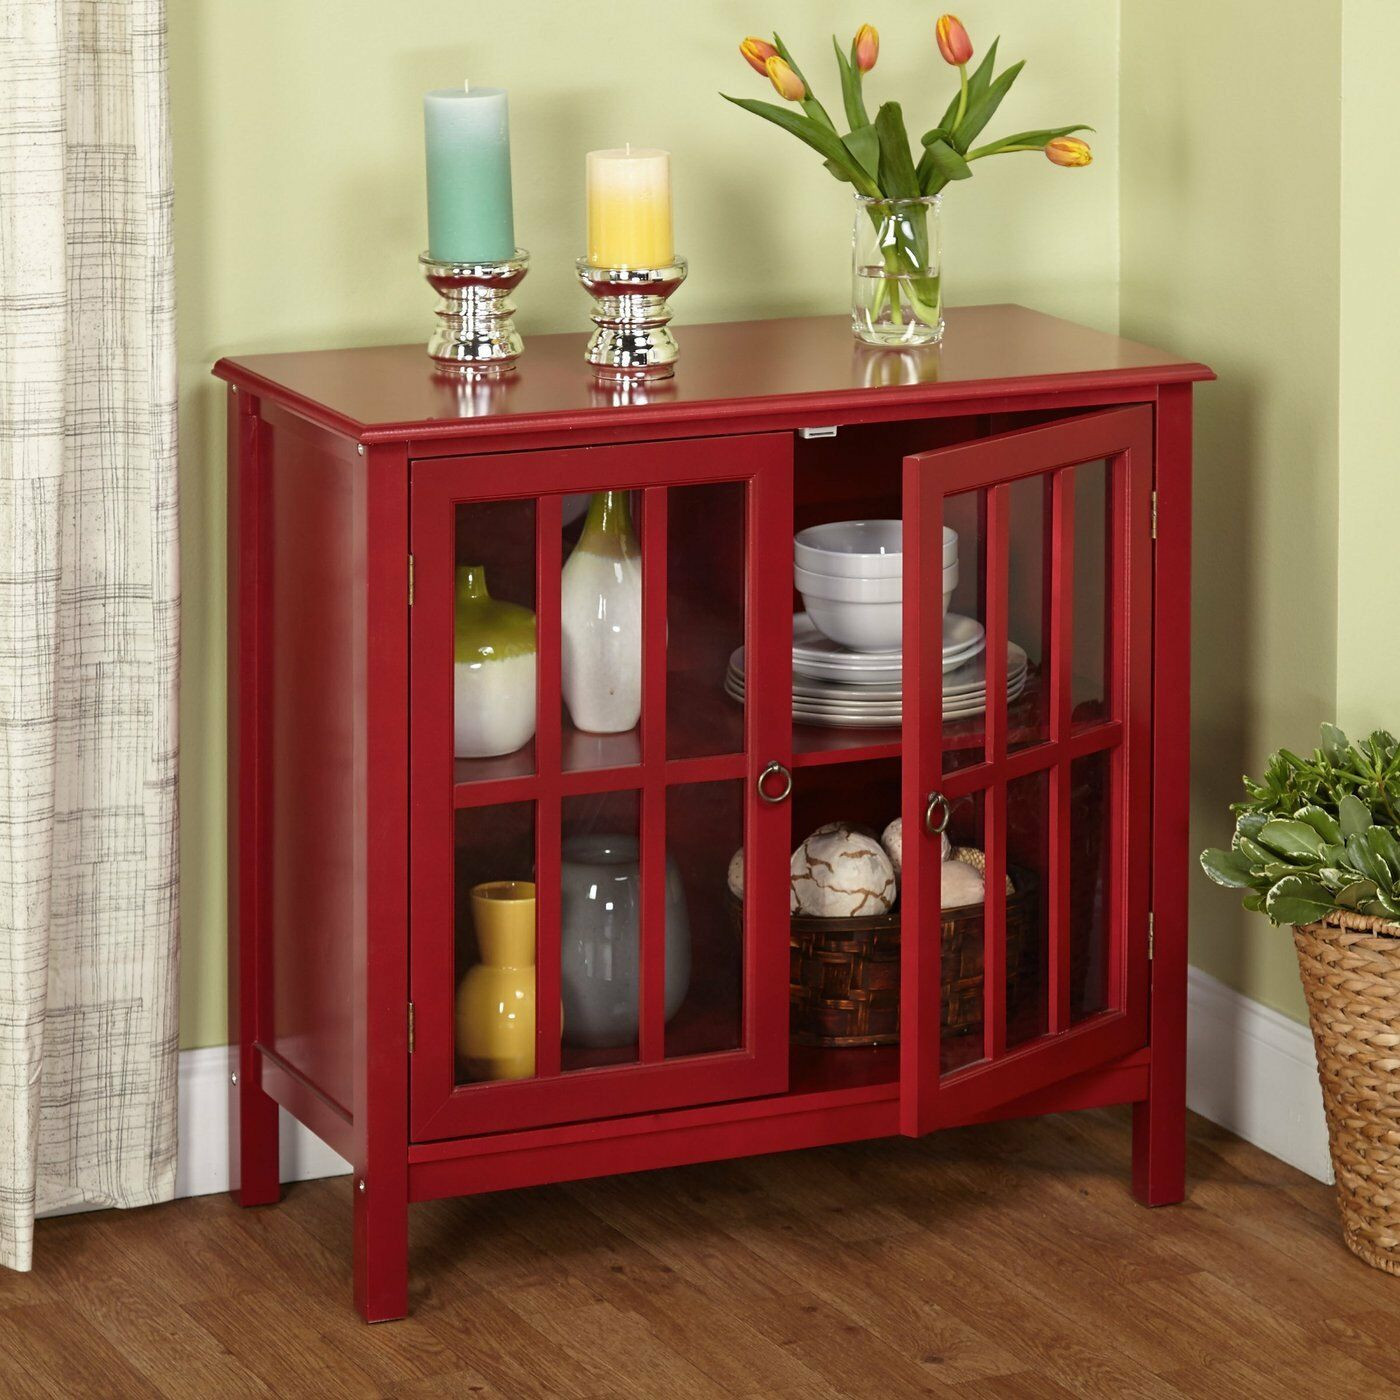 Red Kitchen Storage Cabinet
 Modern Storage Cabinet Red Sideboard Buffet Cupboard